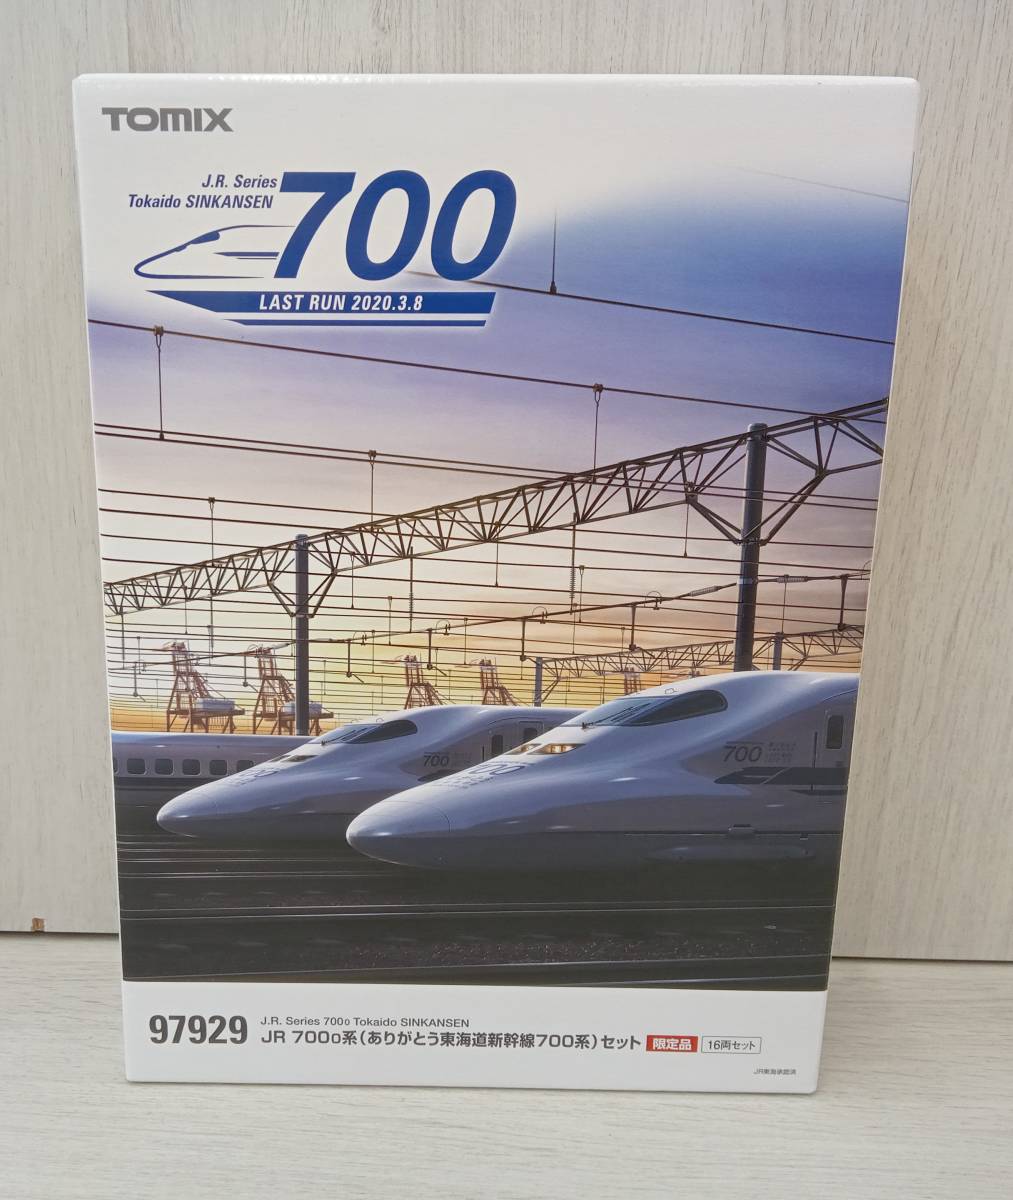 【正規品直輸入】 Nゲージ 700-0系(ありがとう東海道新幹線700系)セット JR 限定品 97929 TOMIX 新幹線